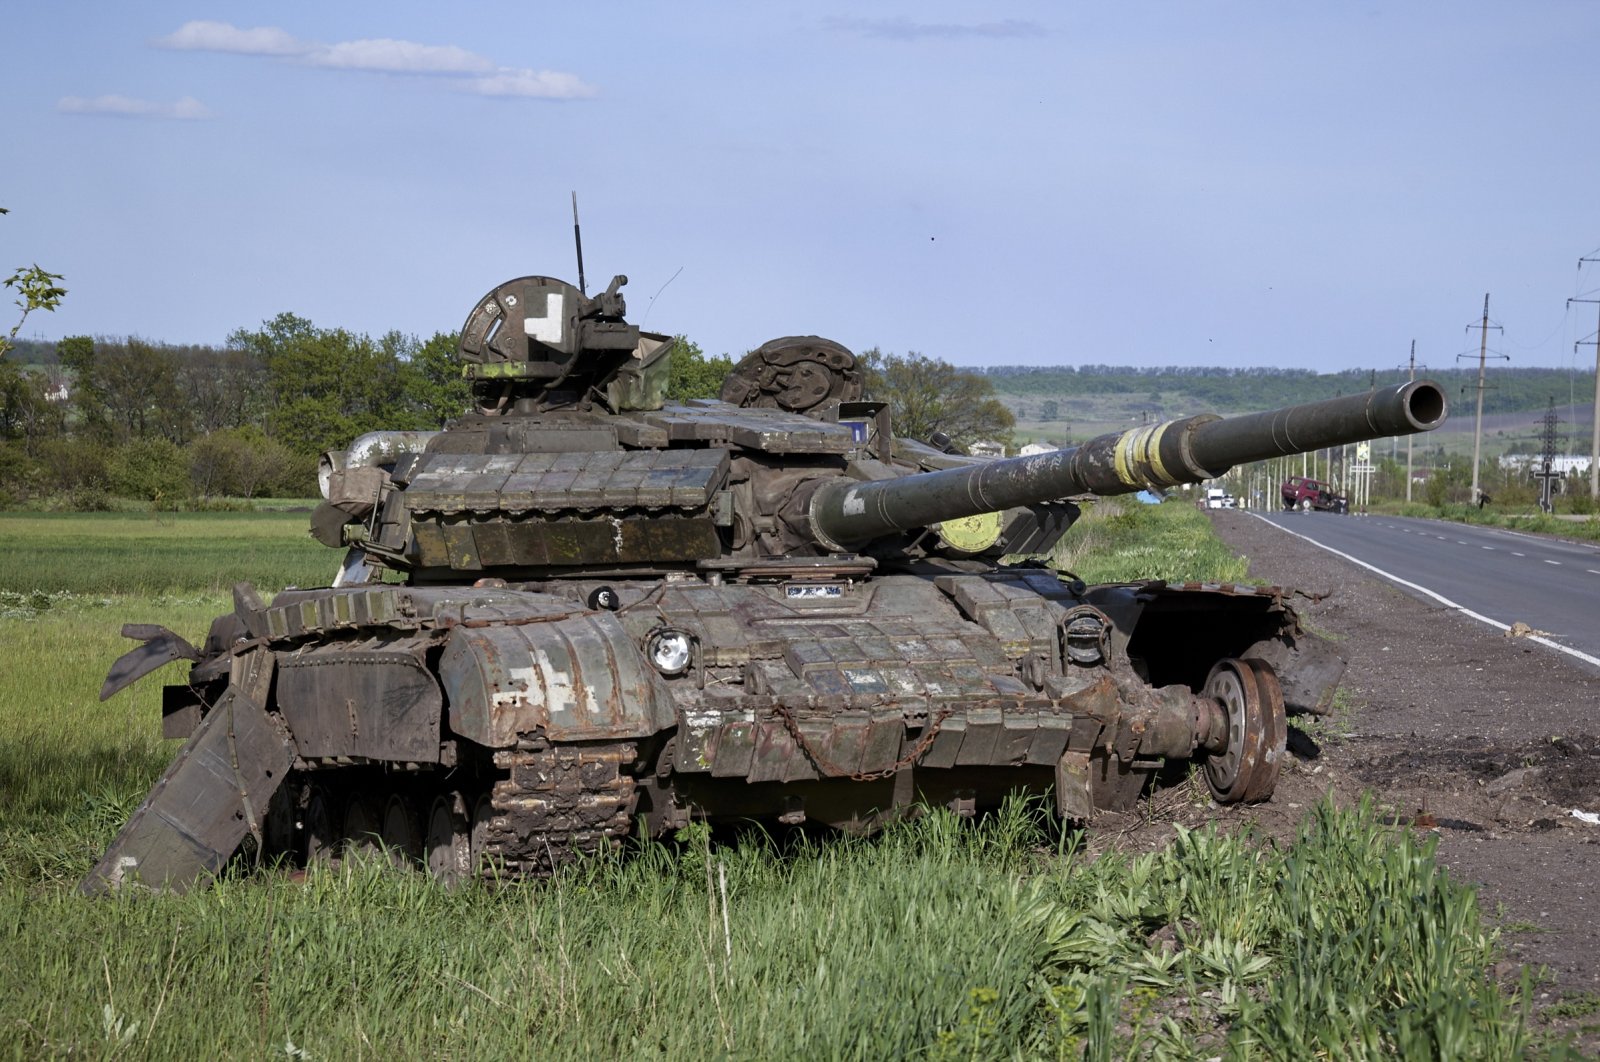 A damaged Russian tank near the village of Mala Rohan, near Kharkiv, Ukraine, May 13, 2022. (EPA Photo)